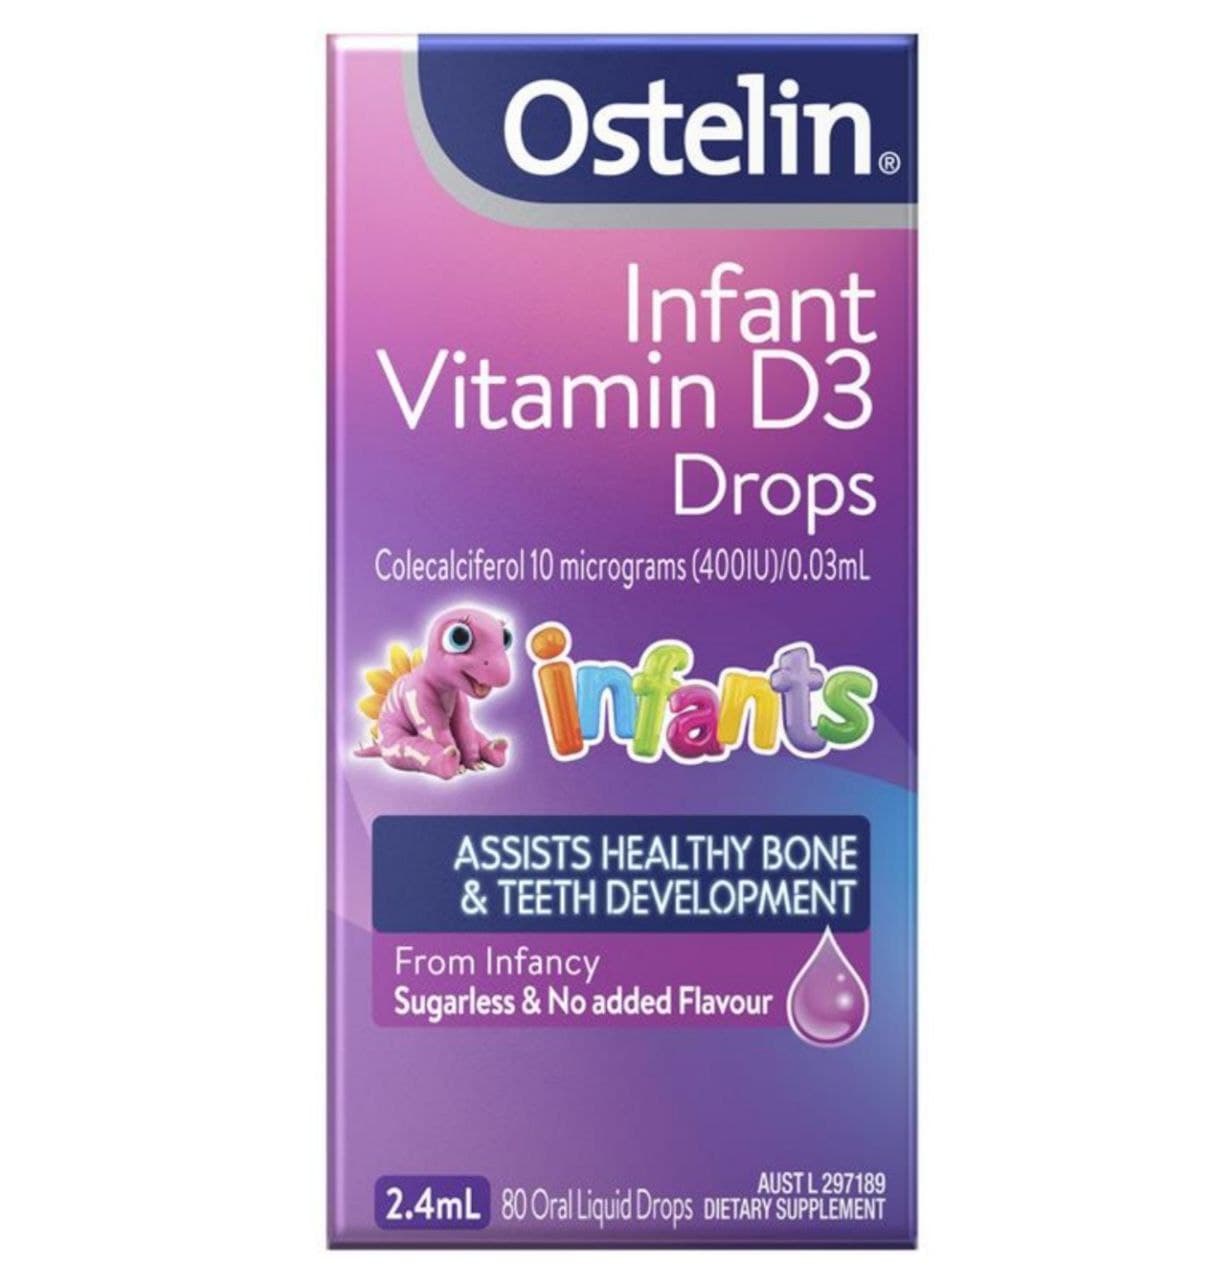 오스테린 무맛/무취 신생아 <b>비타민D</b> Ostelin Infant Vitamin D3 Drops - Vitamin D for Infants 2.4mL